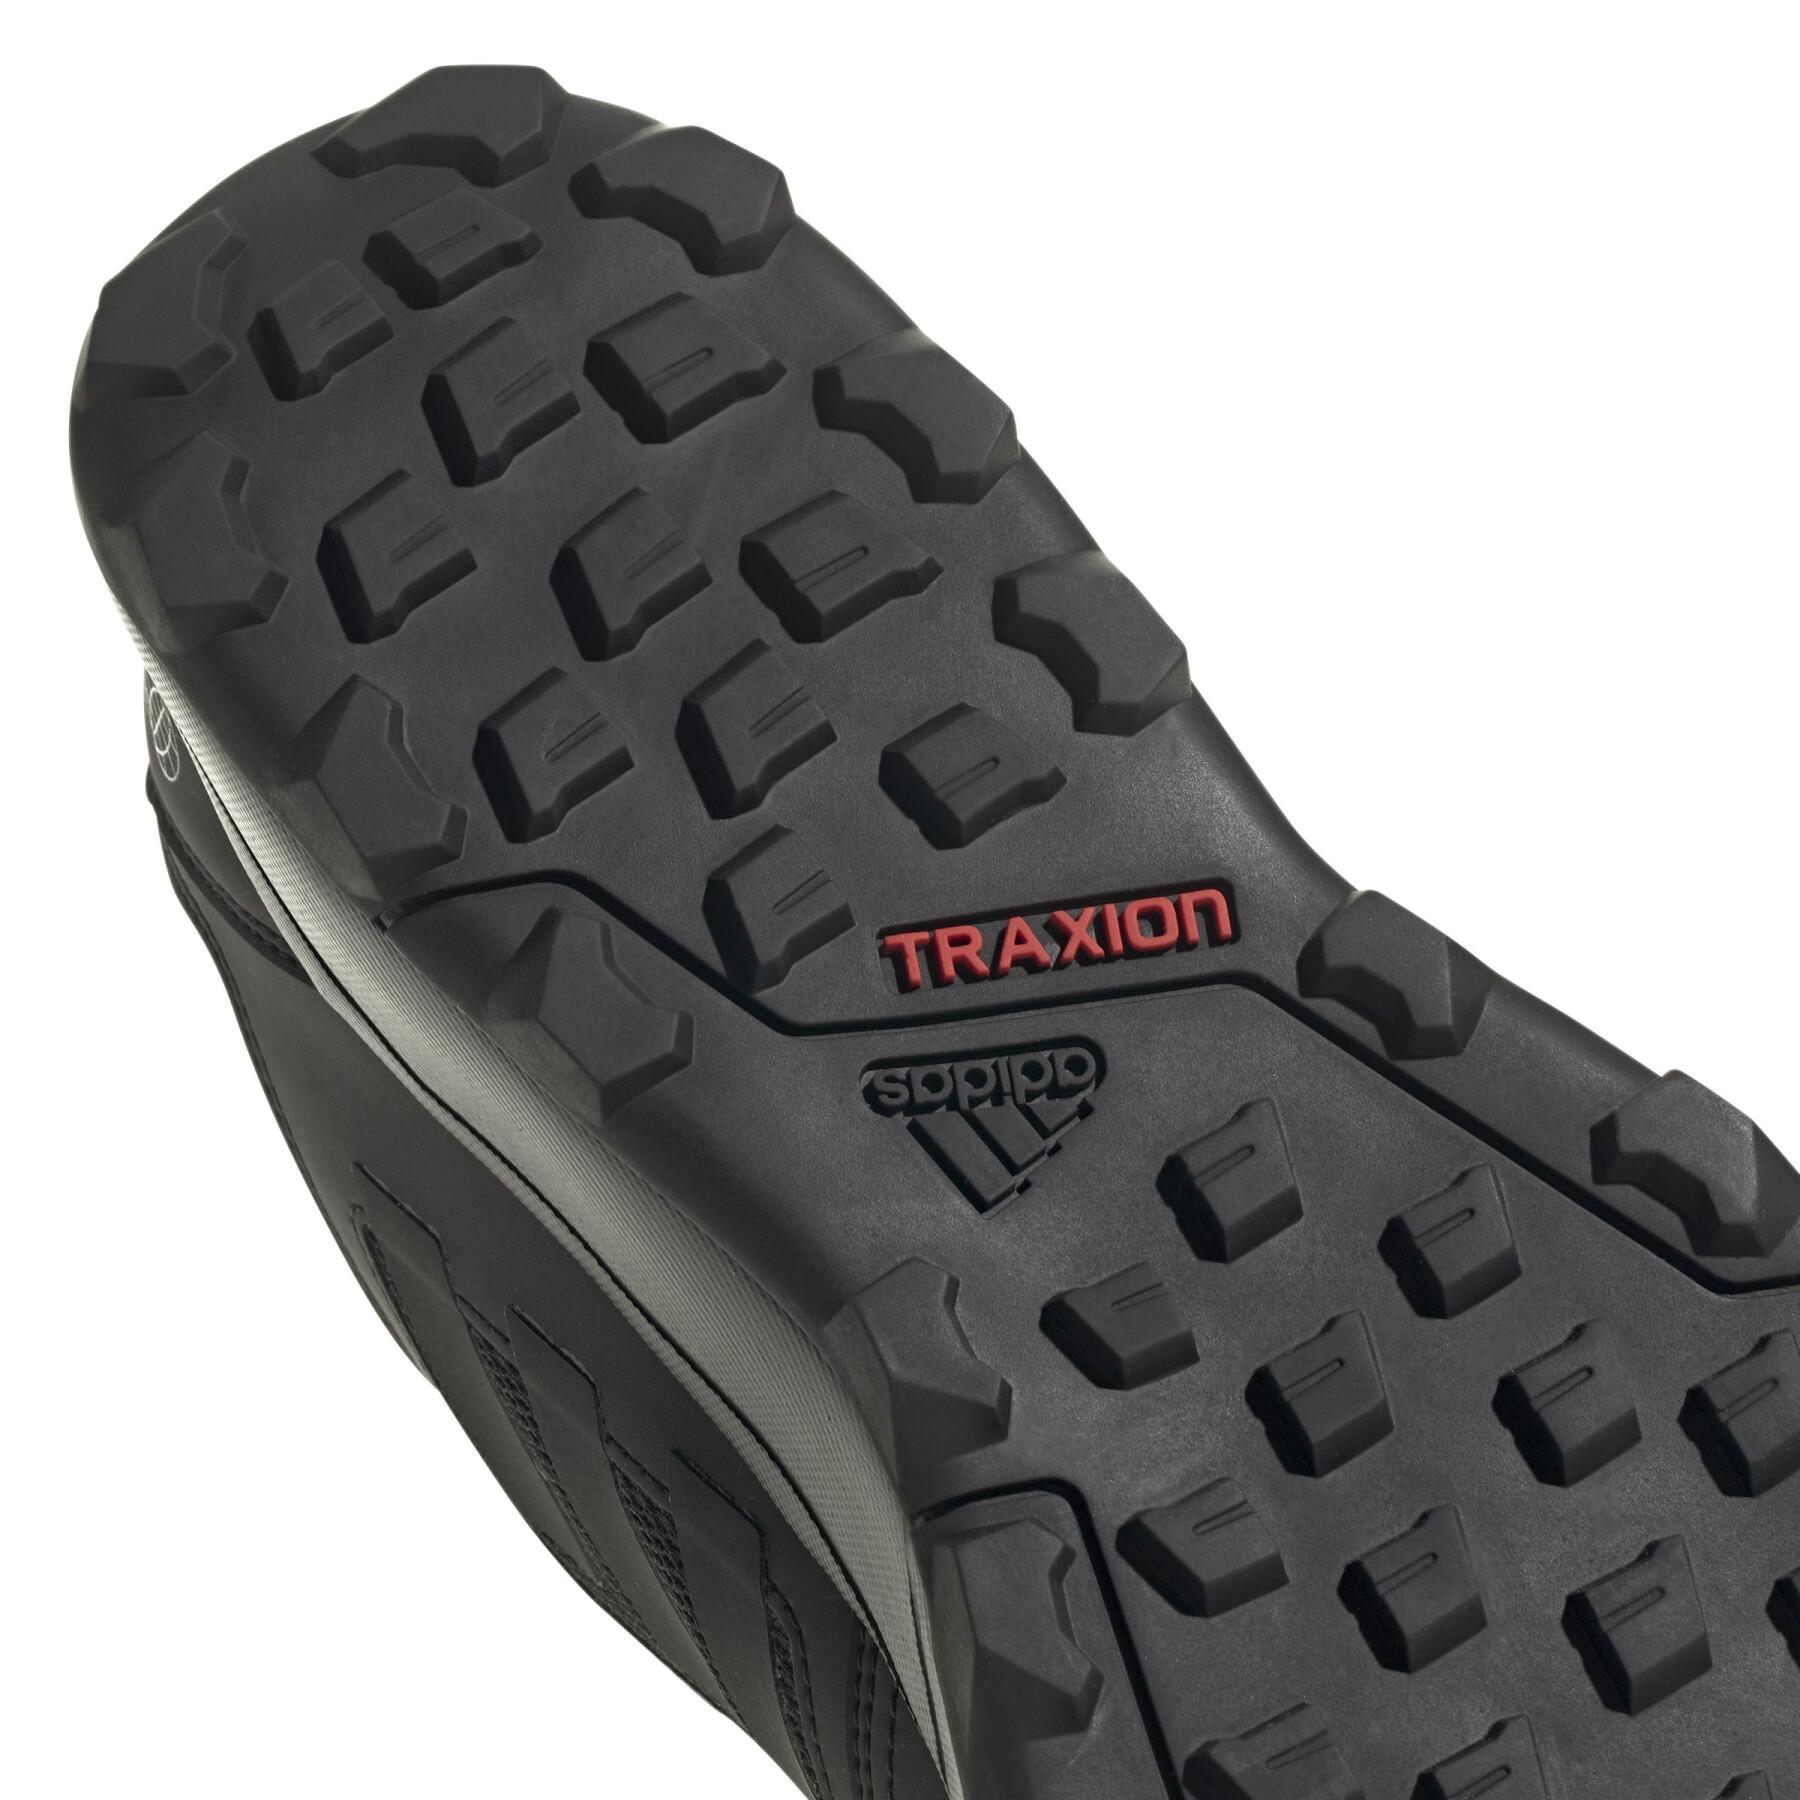 Chaussures de trail adidas Terrex Tracerocker 2 Gtx